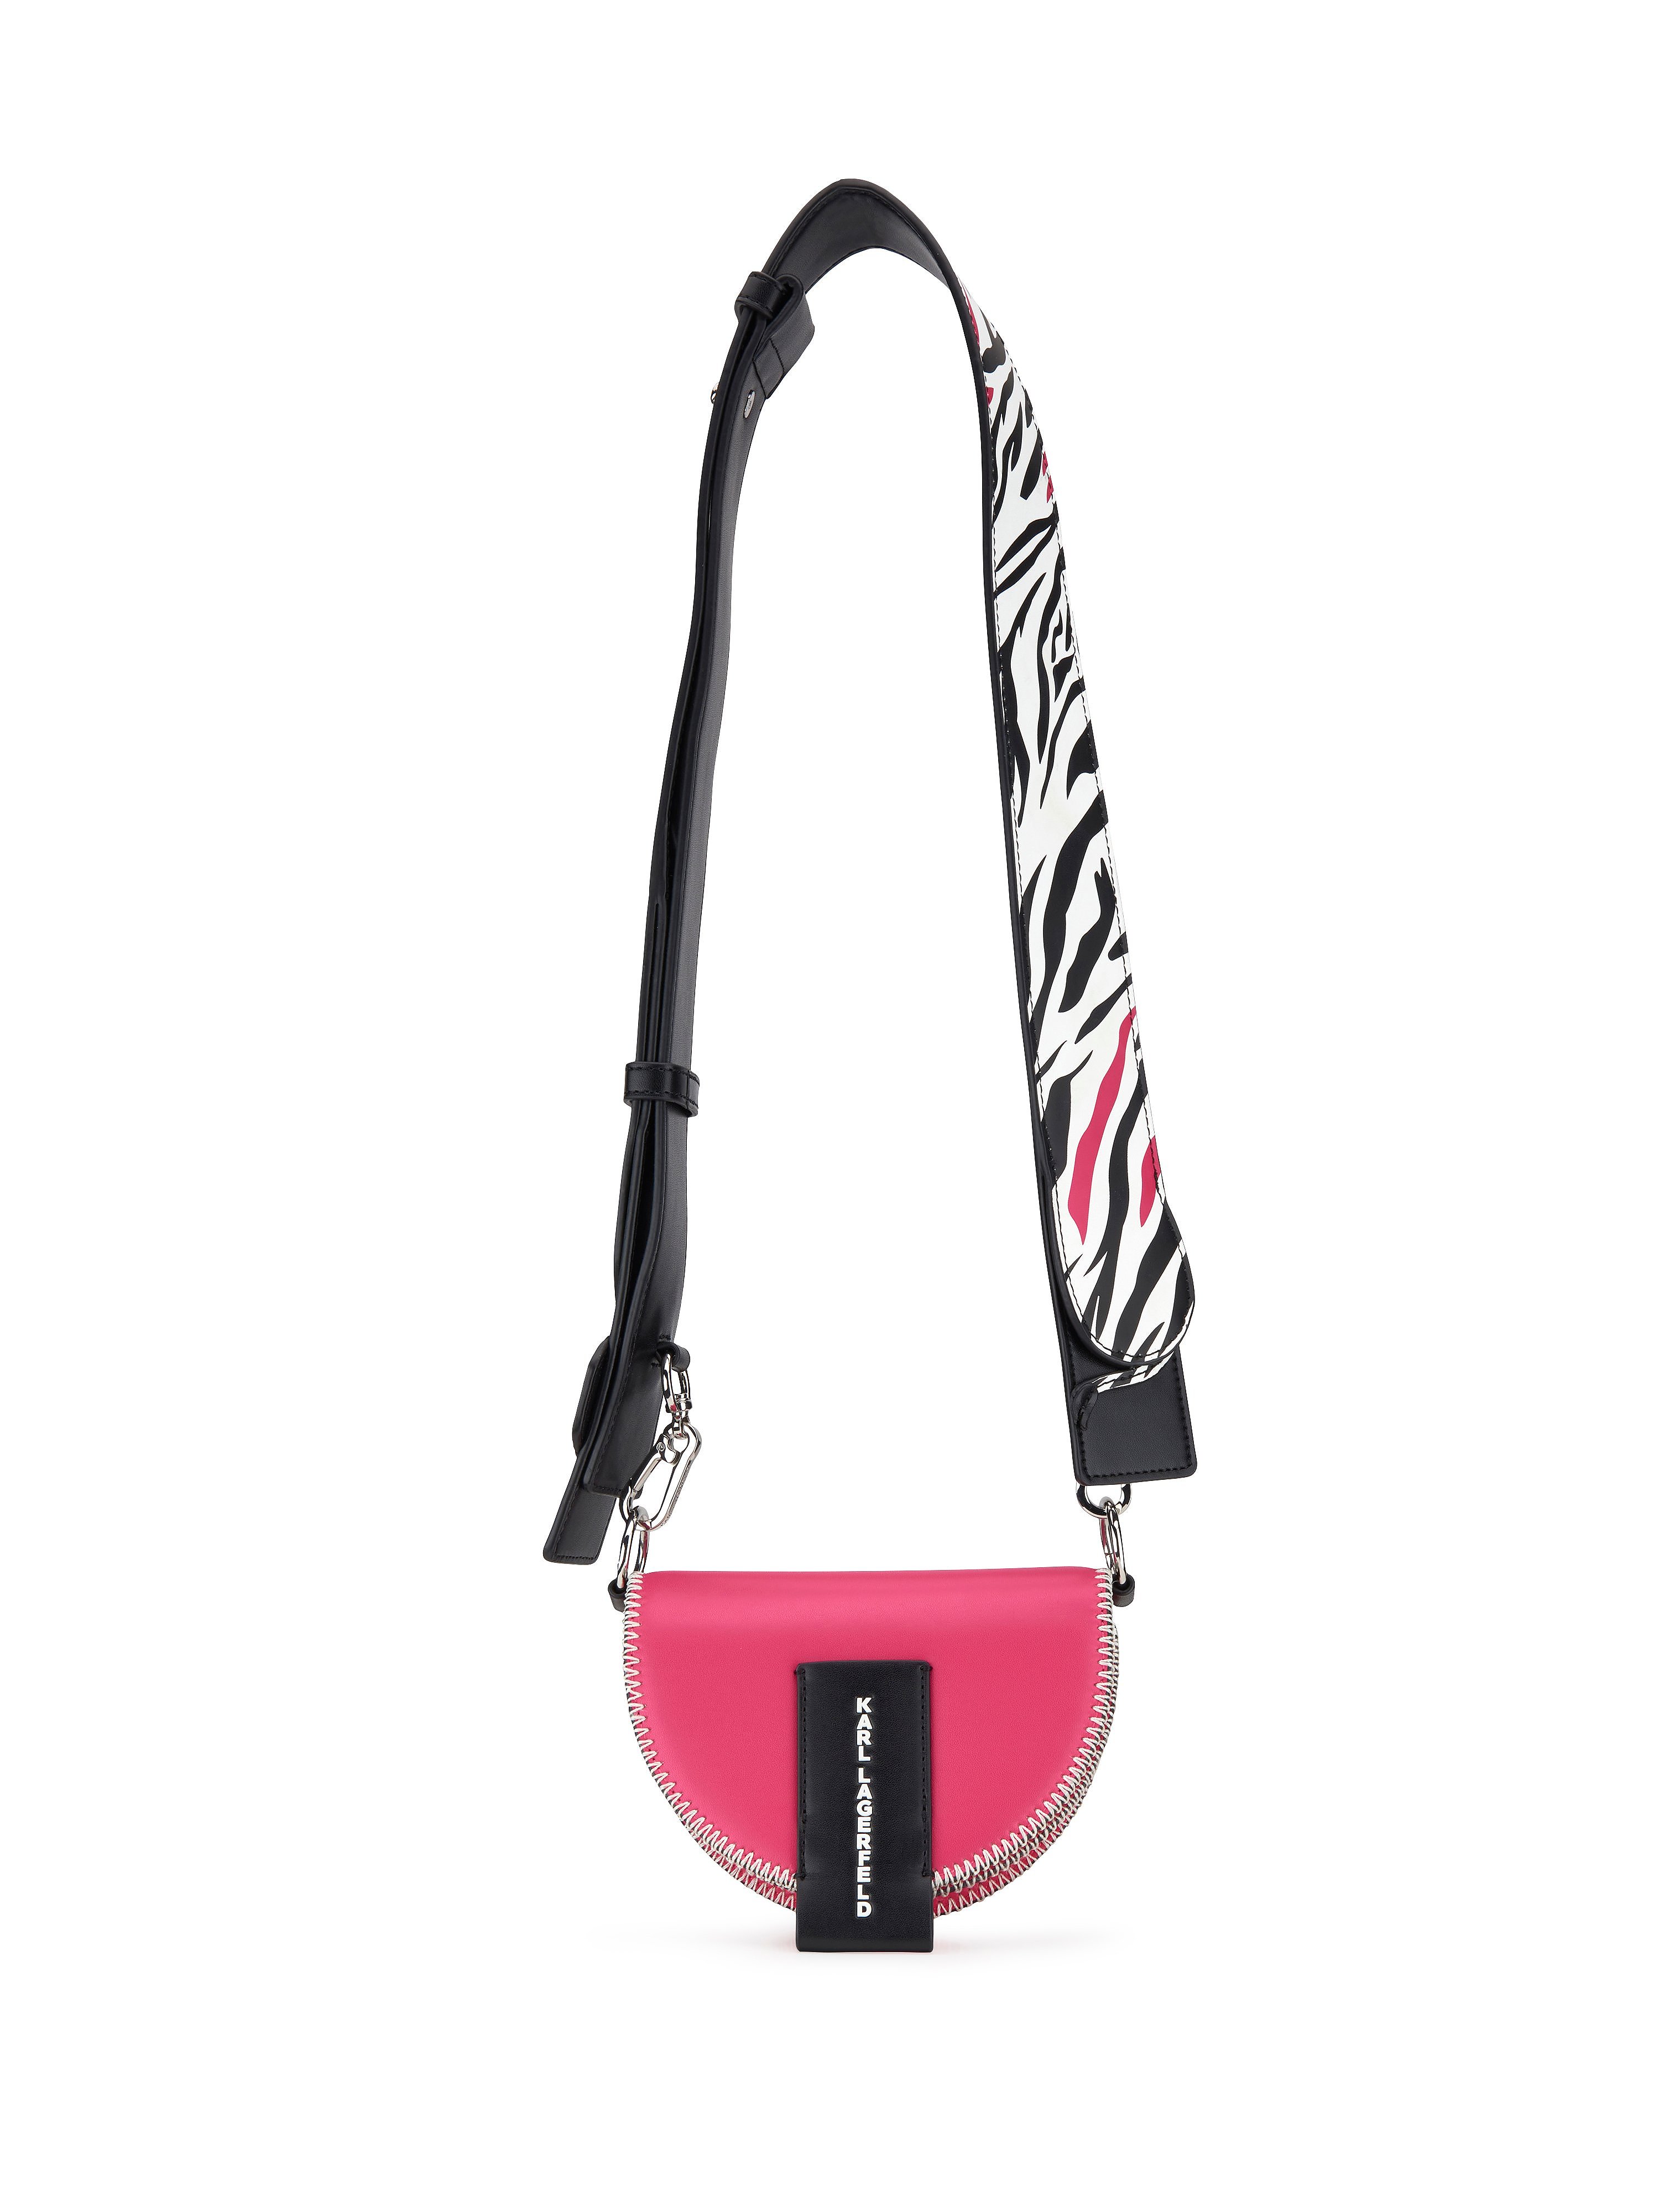 Shoulder bag Karl Lagerfeld bright pink